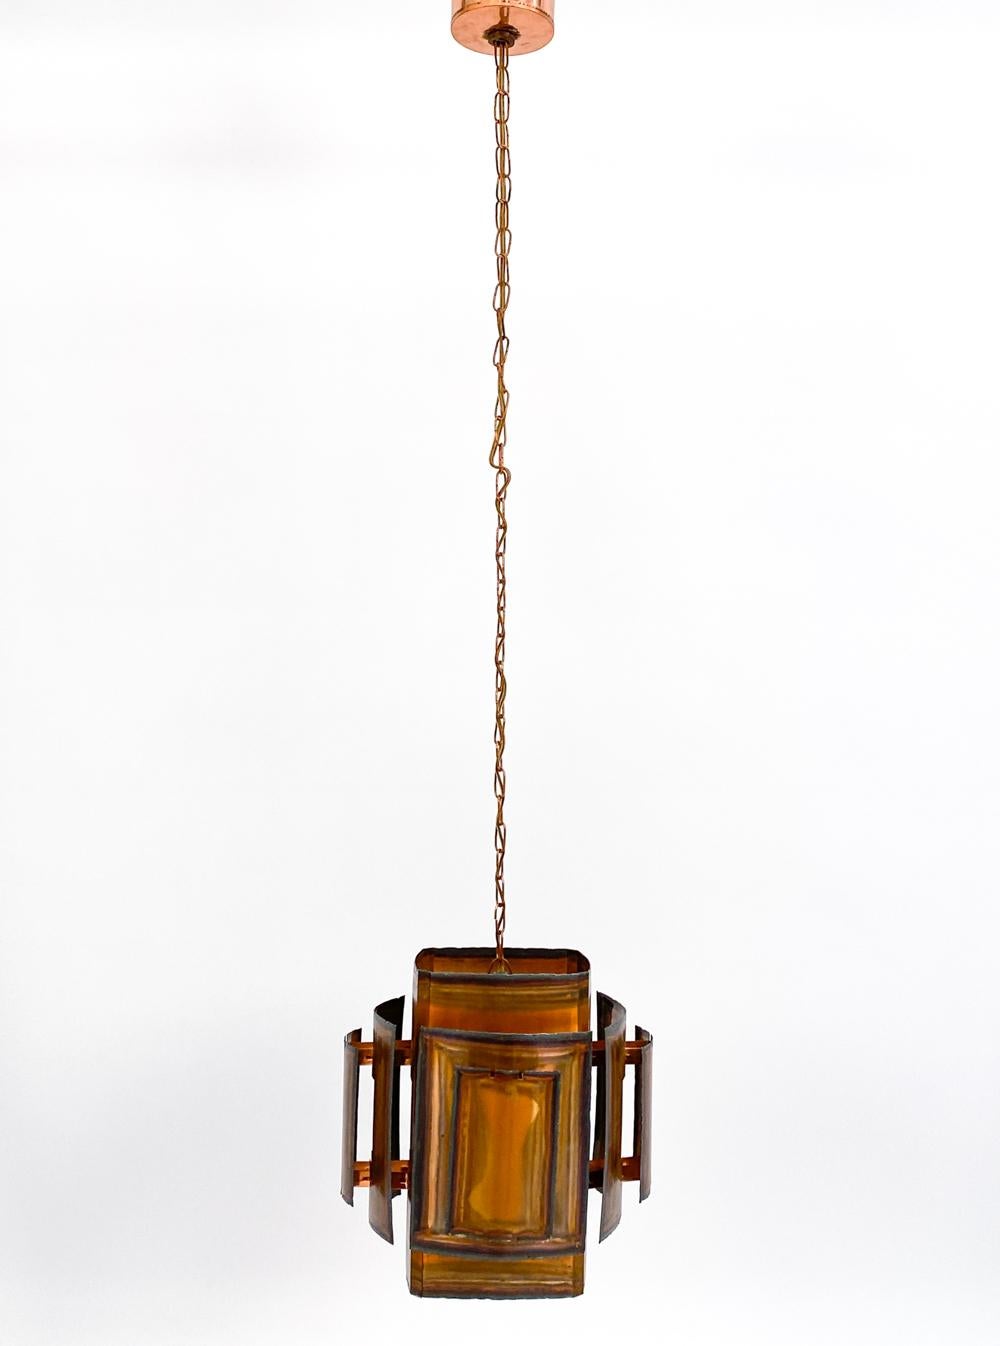 Élevez votre espace avec cette exceptionnelle et rare lampe suspendue du designer danois Svend Aage Holm Sørensen. S'inspirant de la silhouette d'une lanterne, cette pièce présente des couches dimensionnelles de cuivre découpé au chalumeau qui